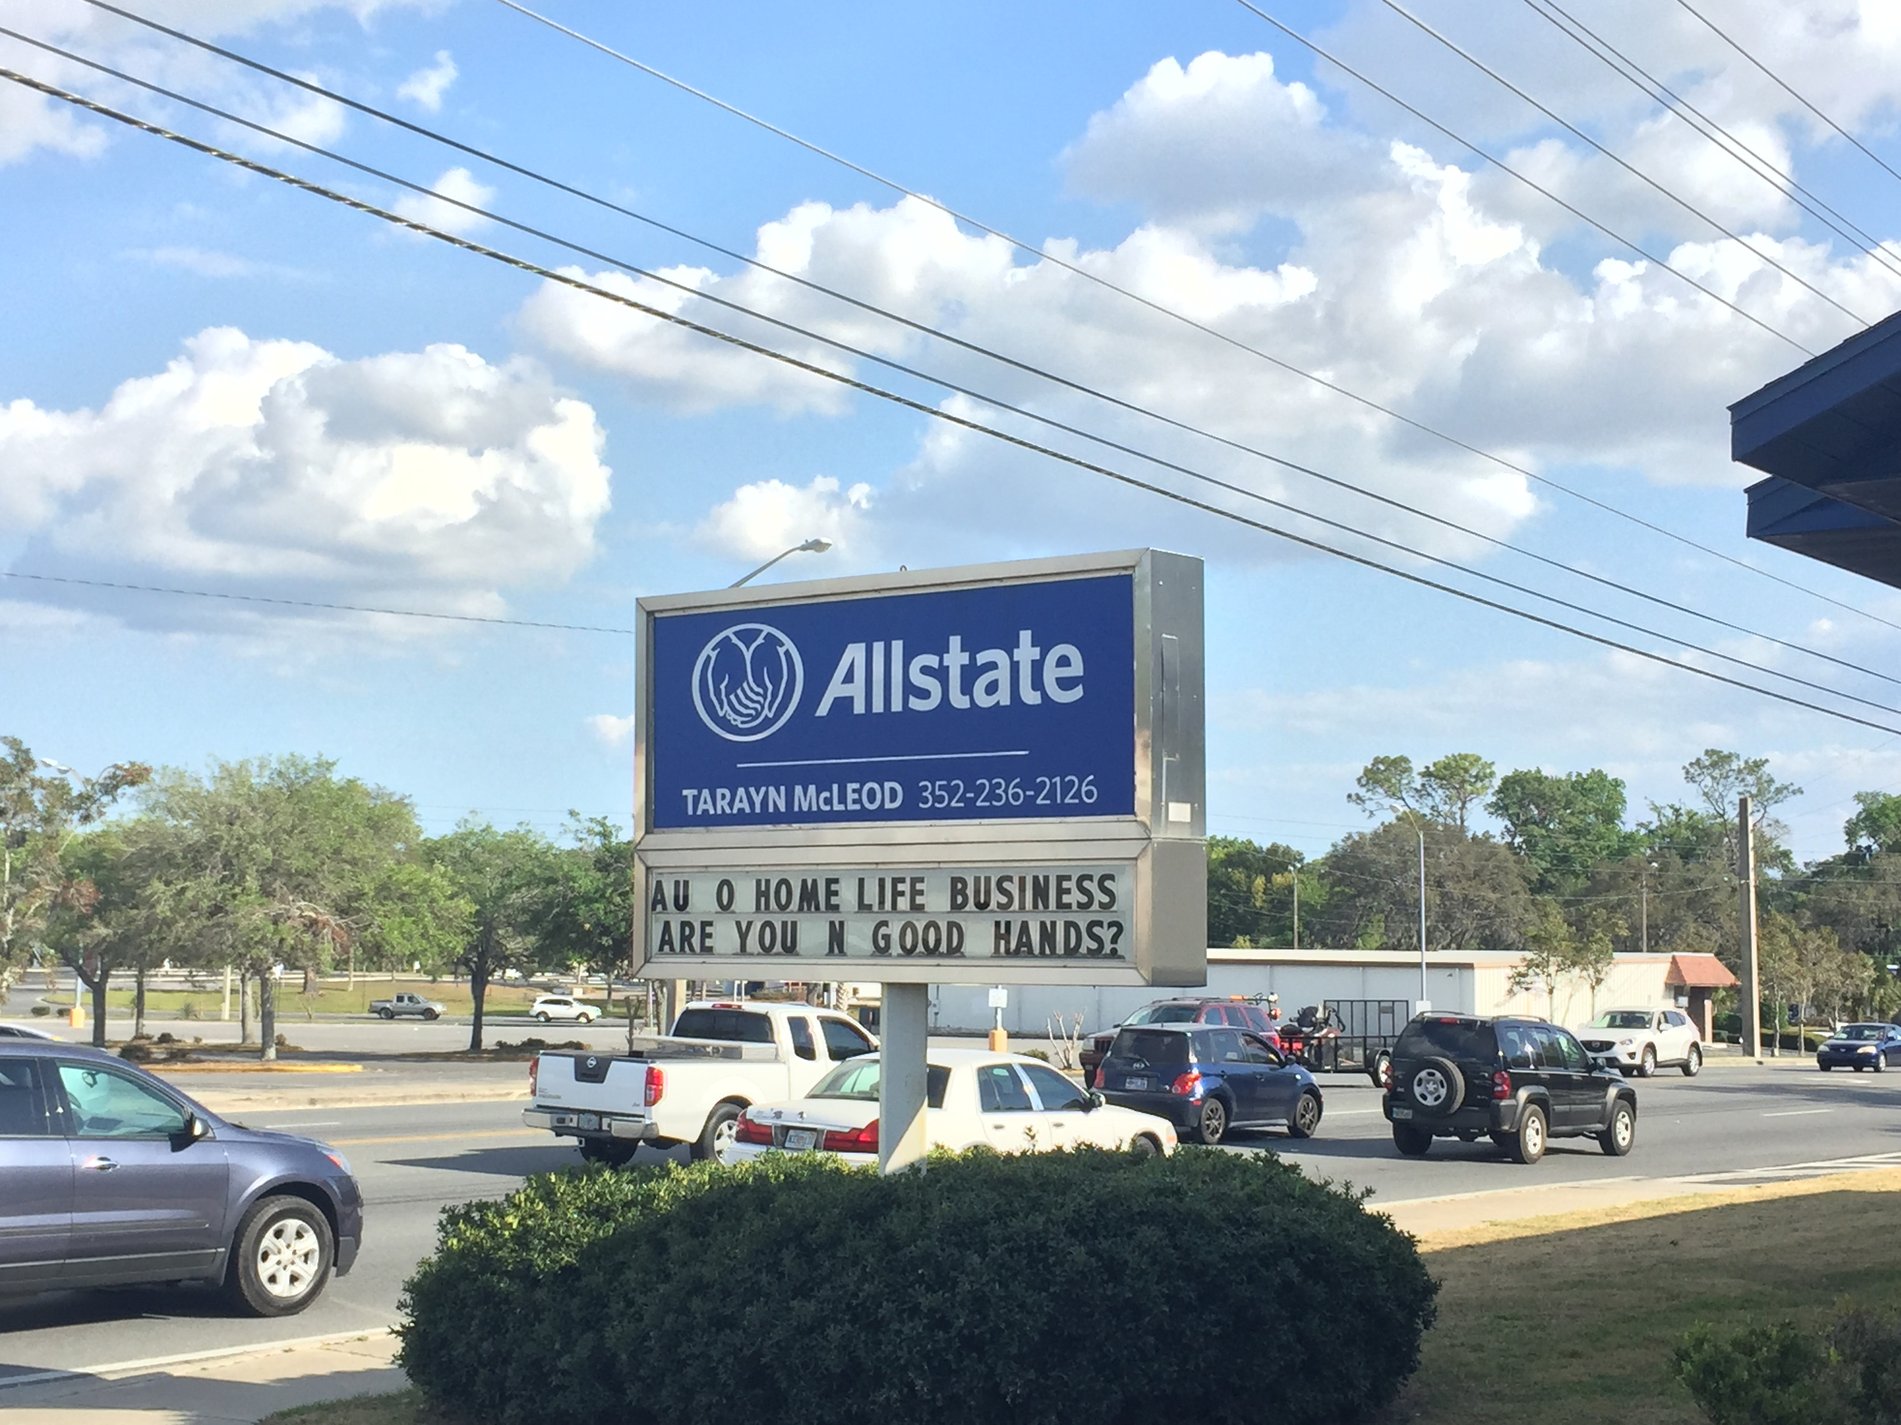 Allstate Car Insurance in Ocala, FL Tarayn McLeod